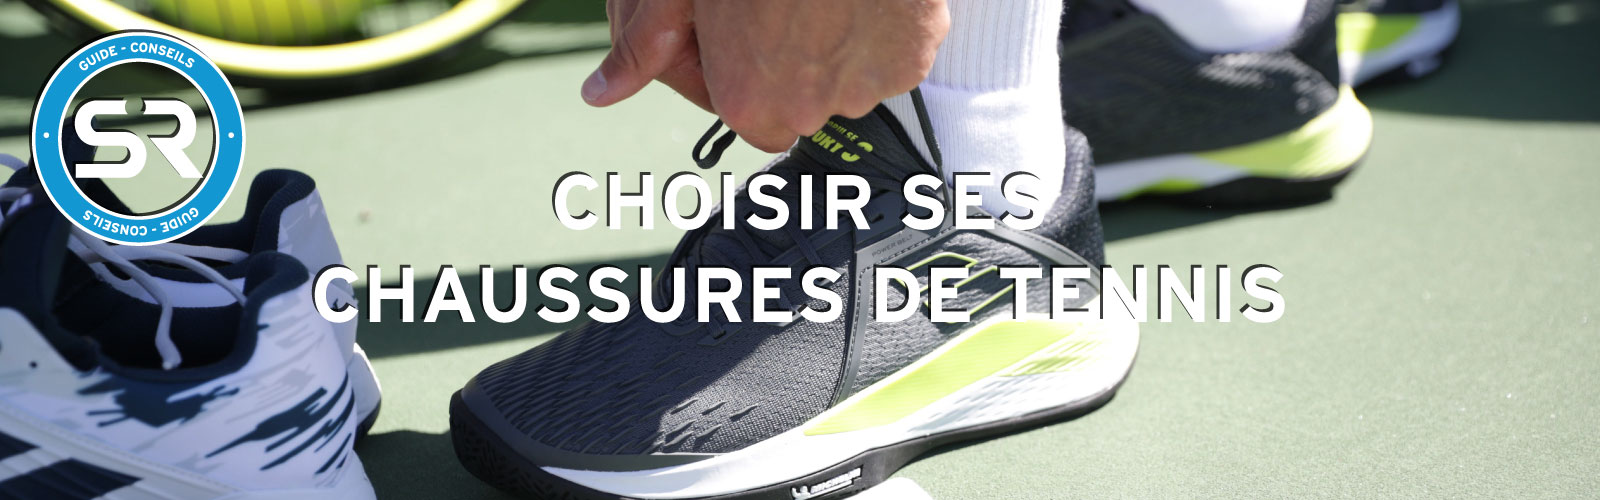 Chaussures Tennis Header